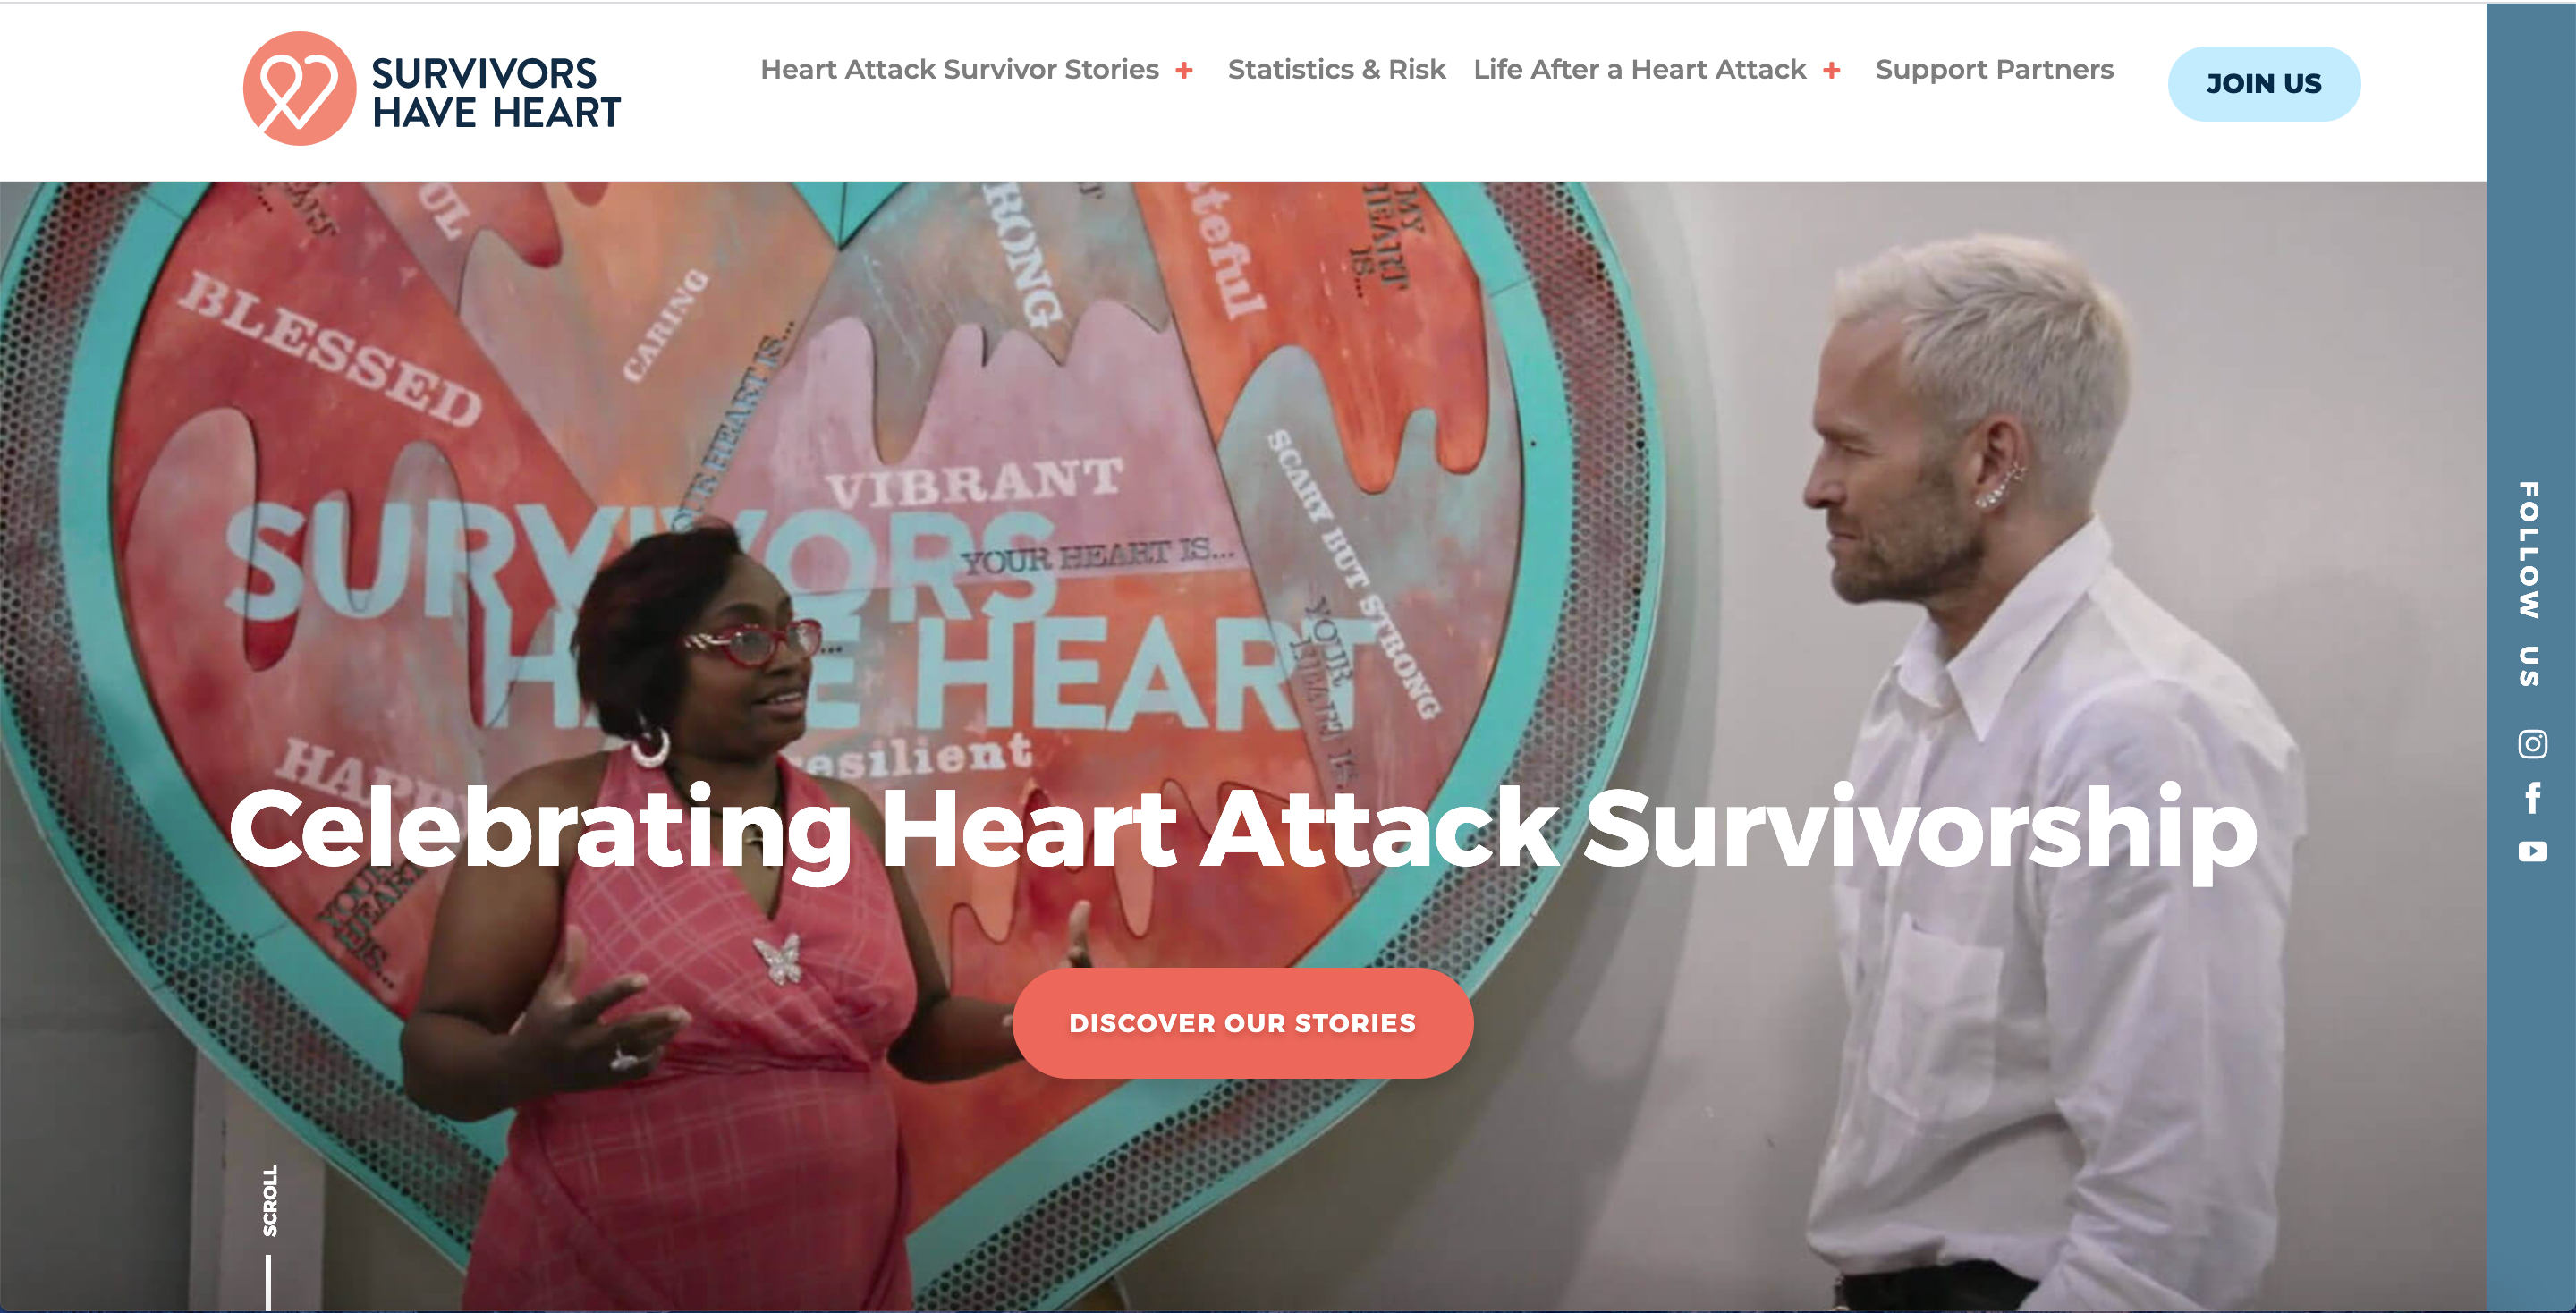 Survivors Have Heart image